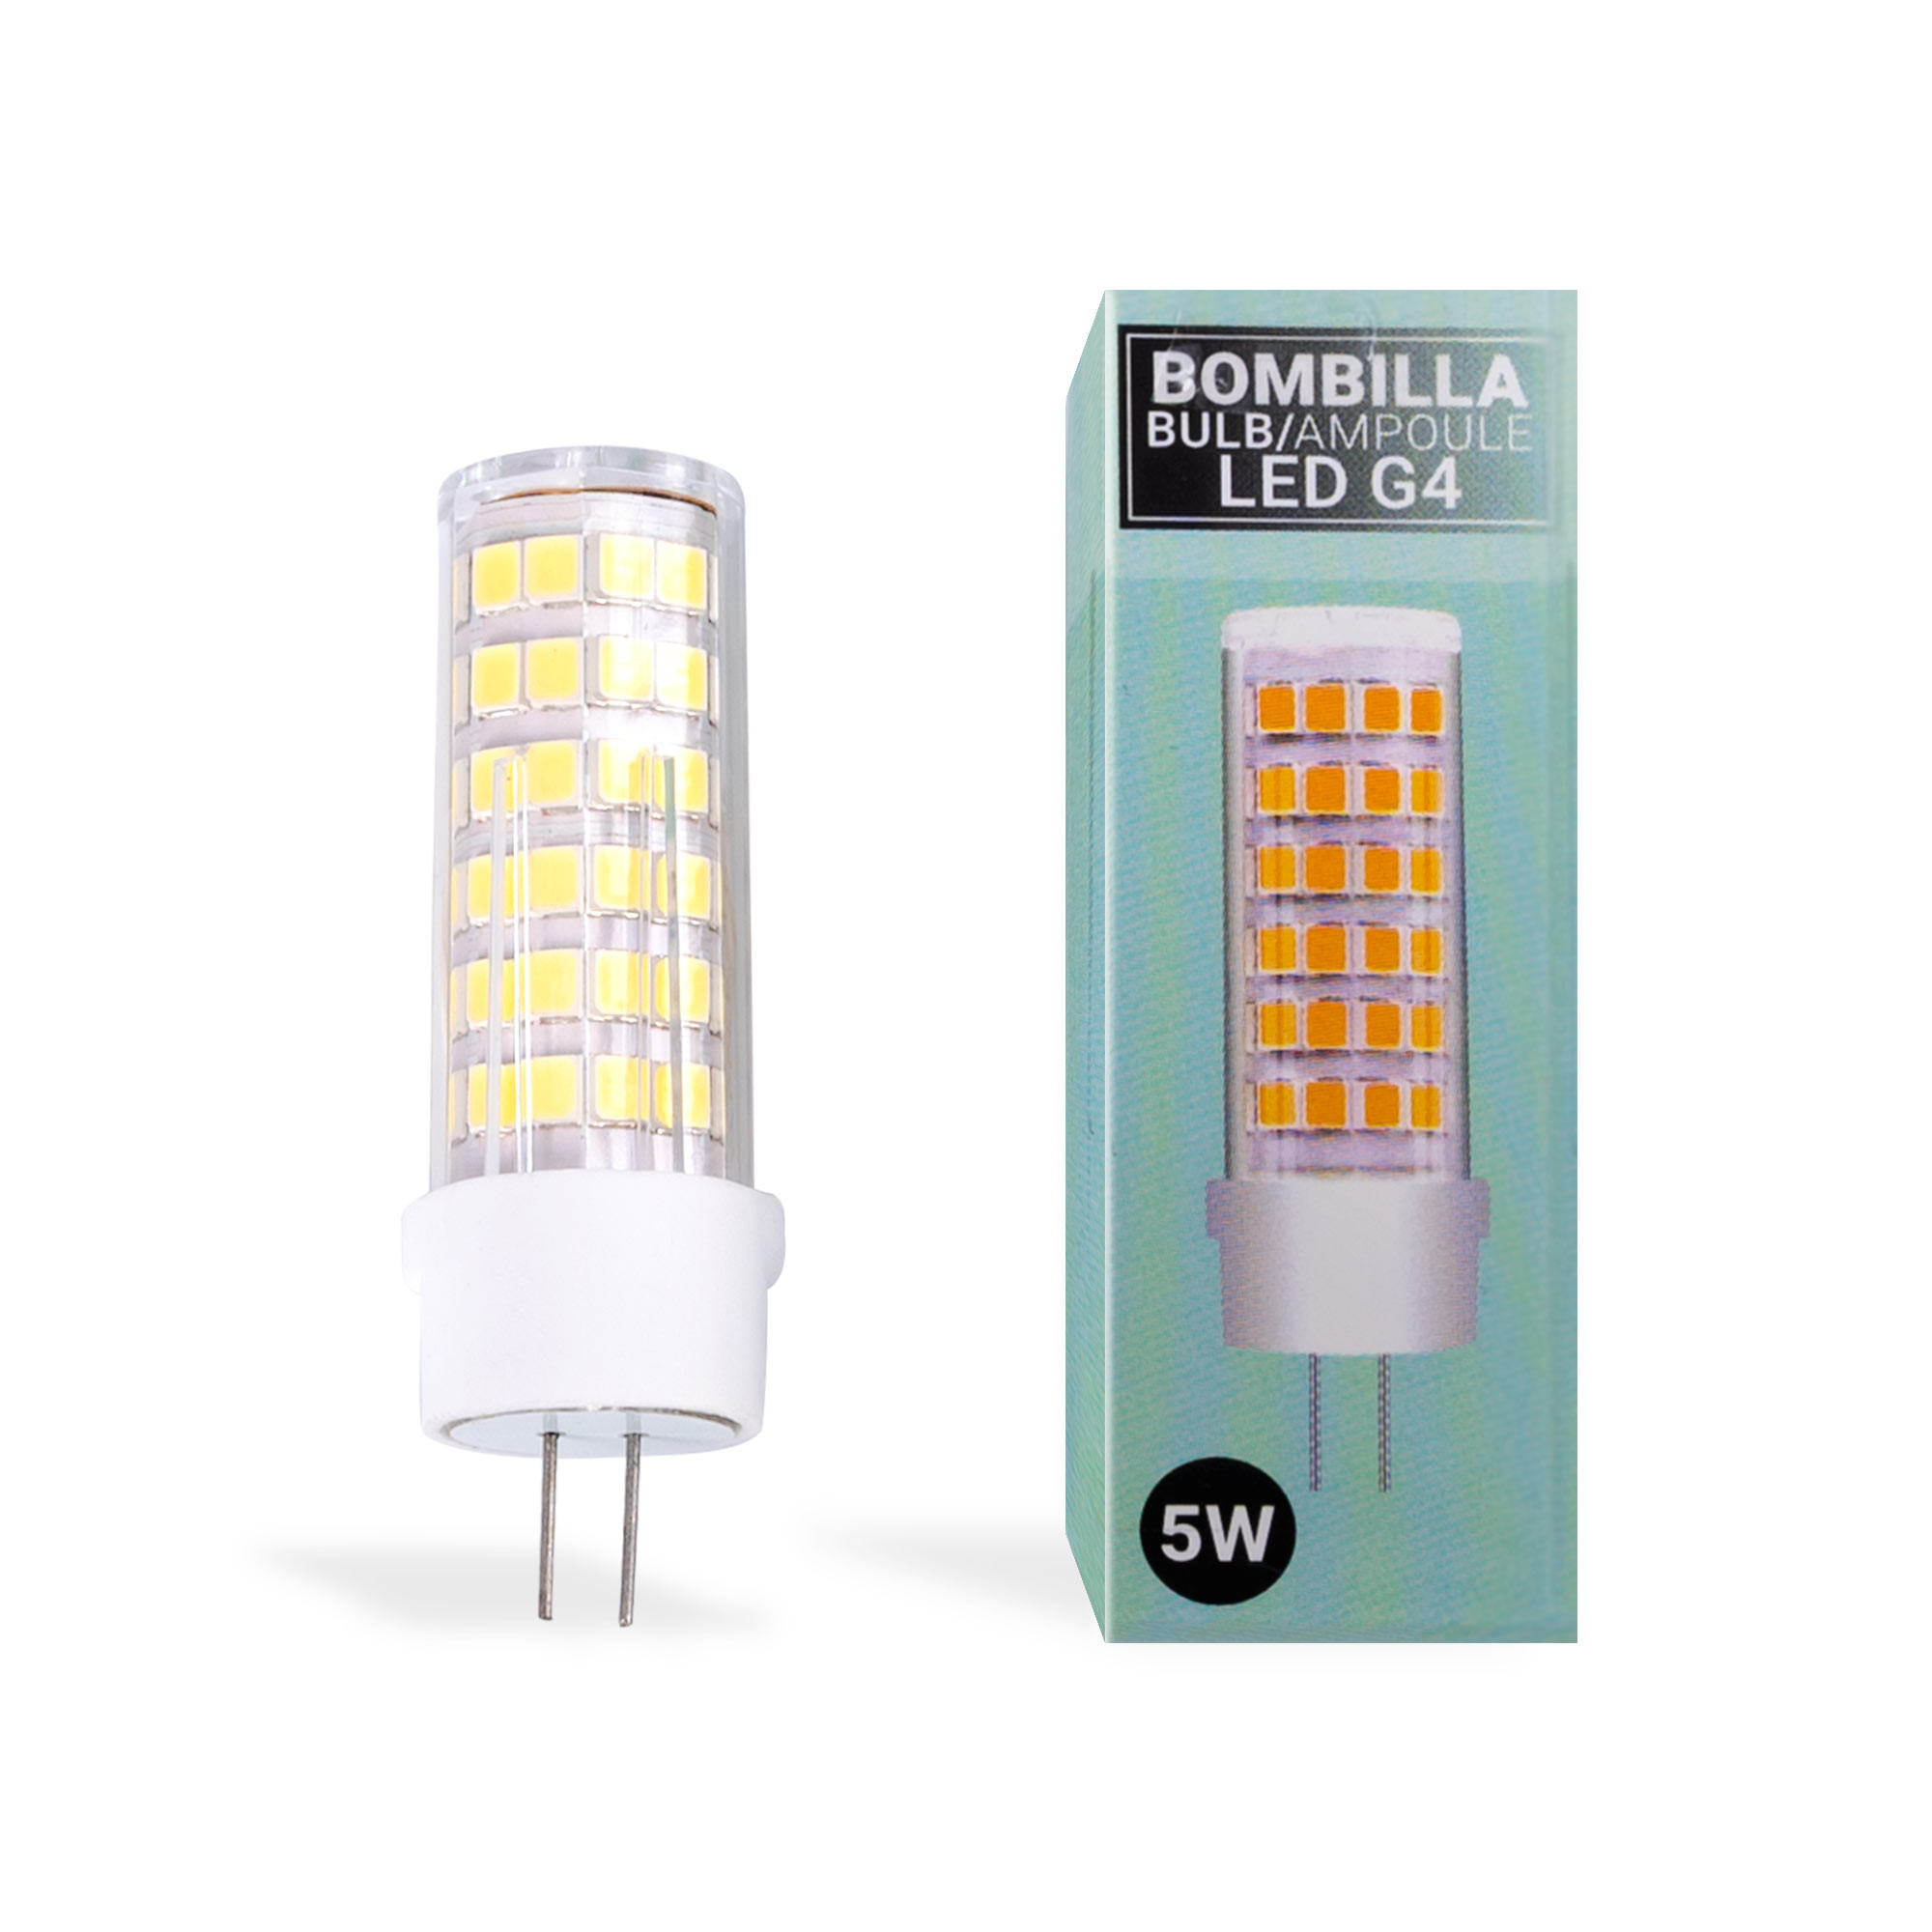 CREA Ampoule LED G4 pour hotte aspirante 12 V 2 W Blanc froid 6000 K, 200